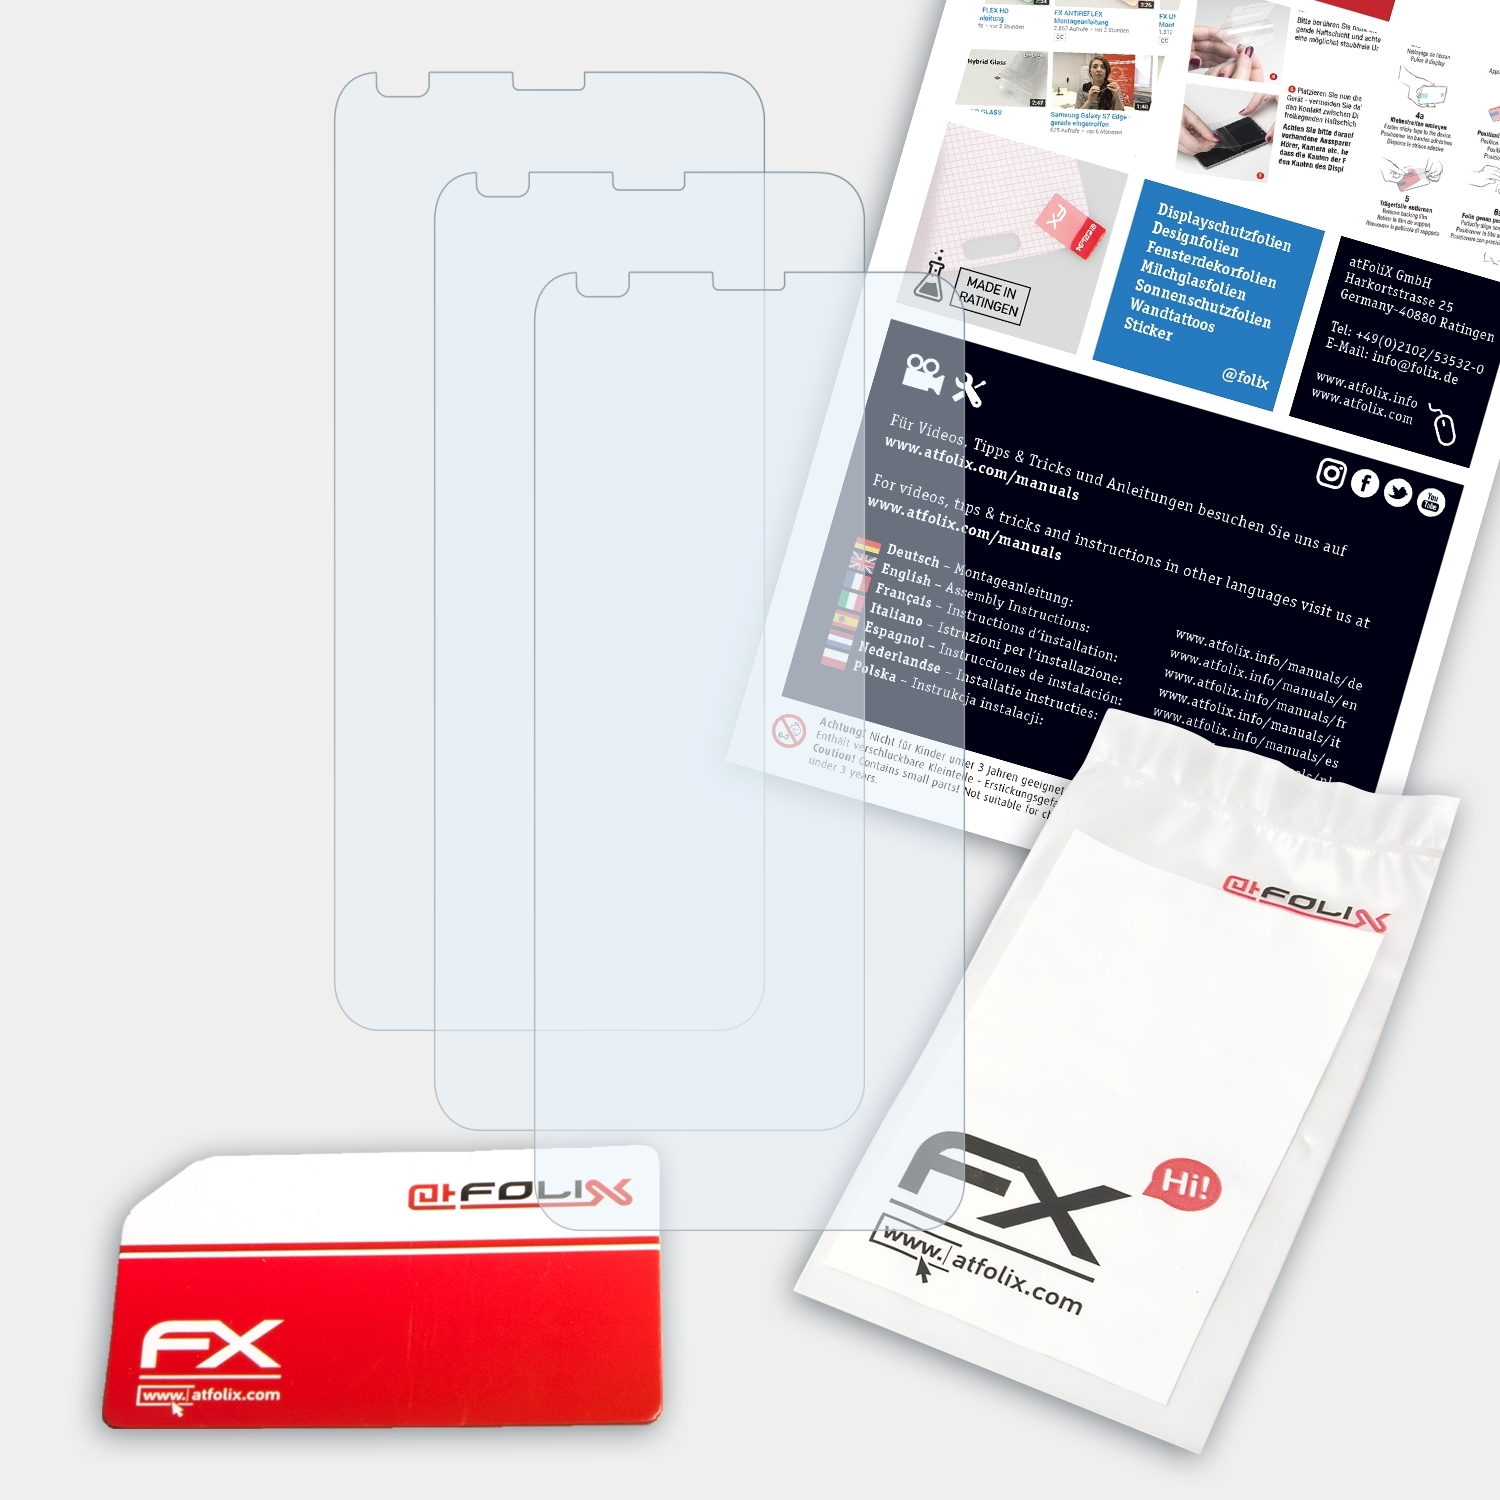 ATFOLIX 3x FX-Clear plus) Displayschutz(für Gigaset GS370